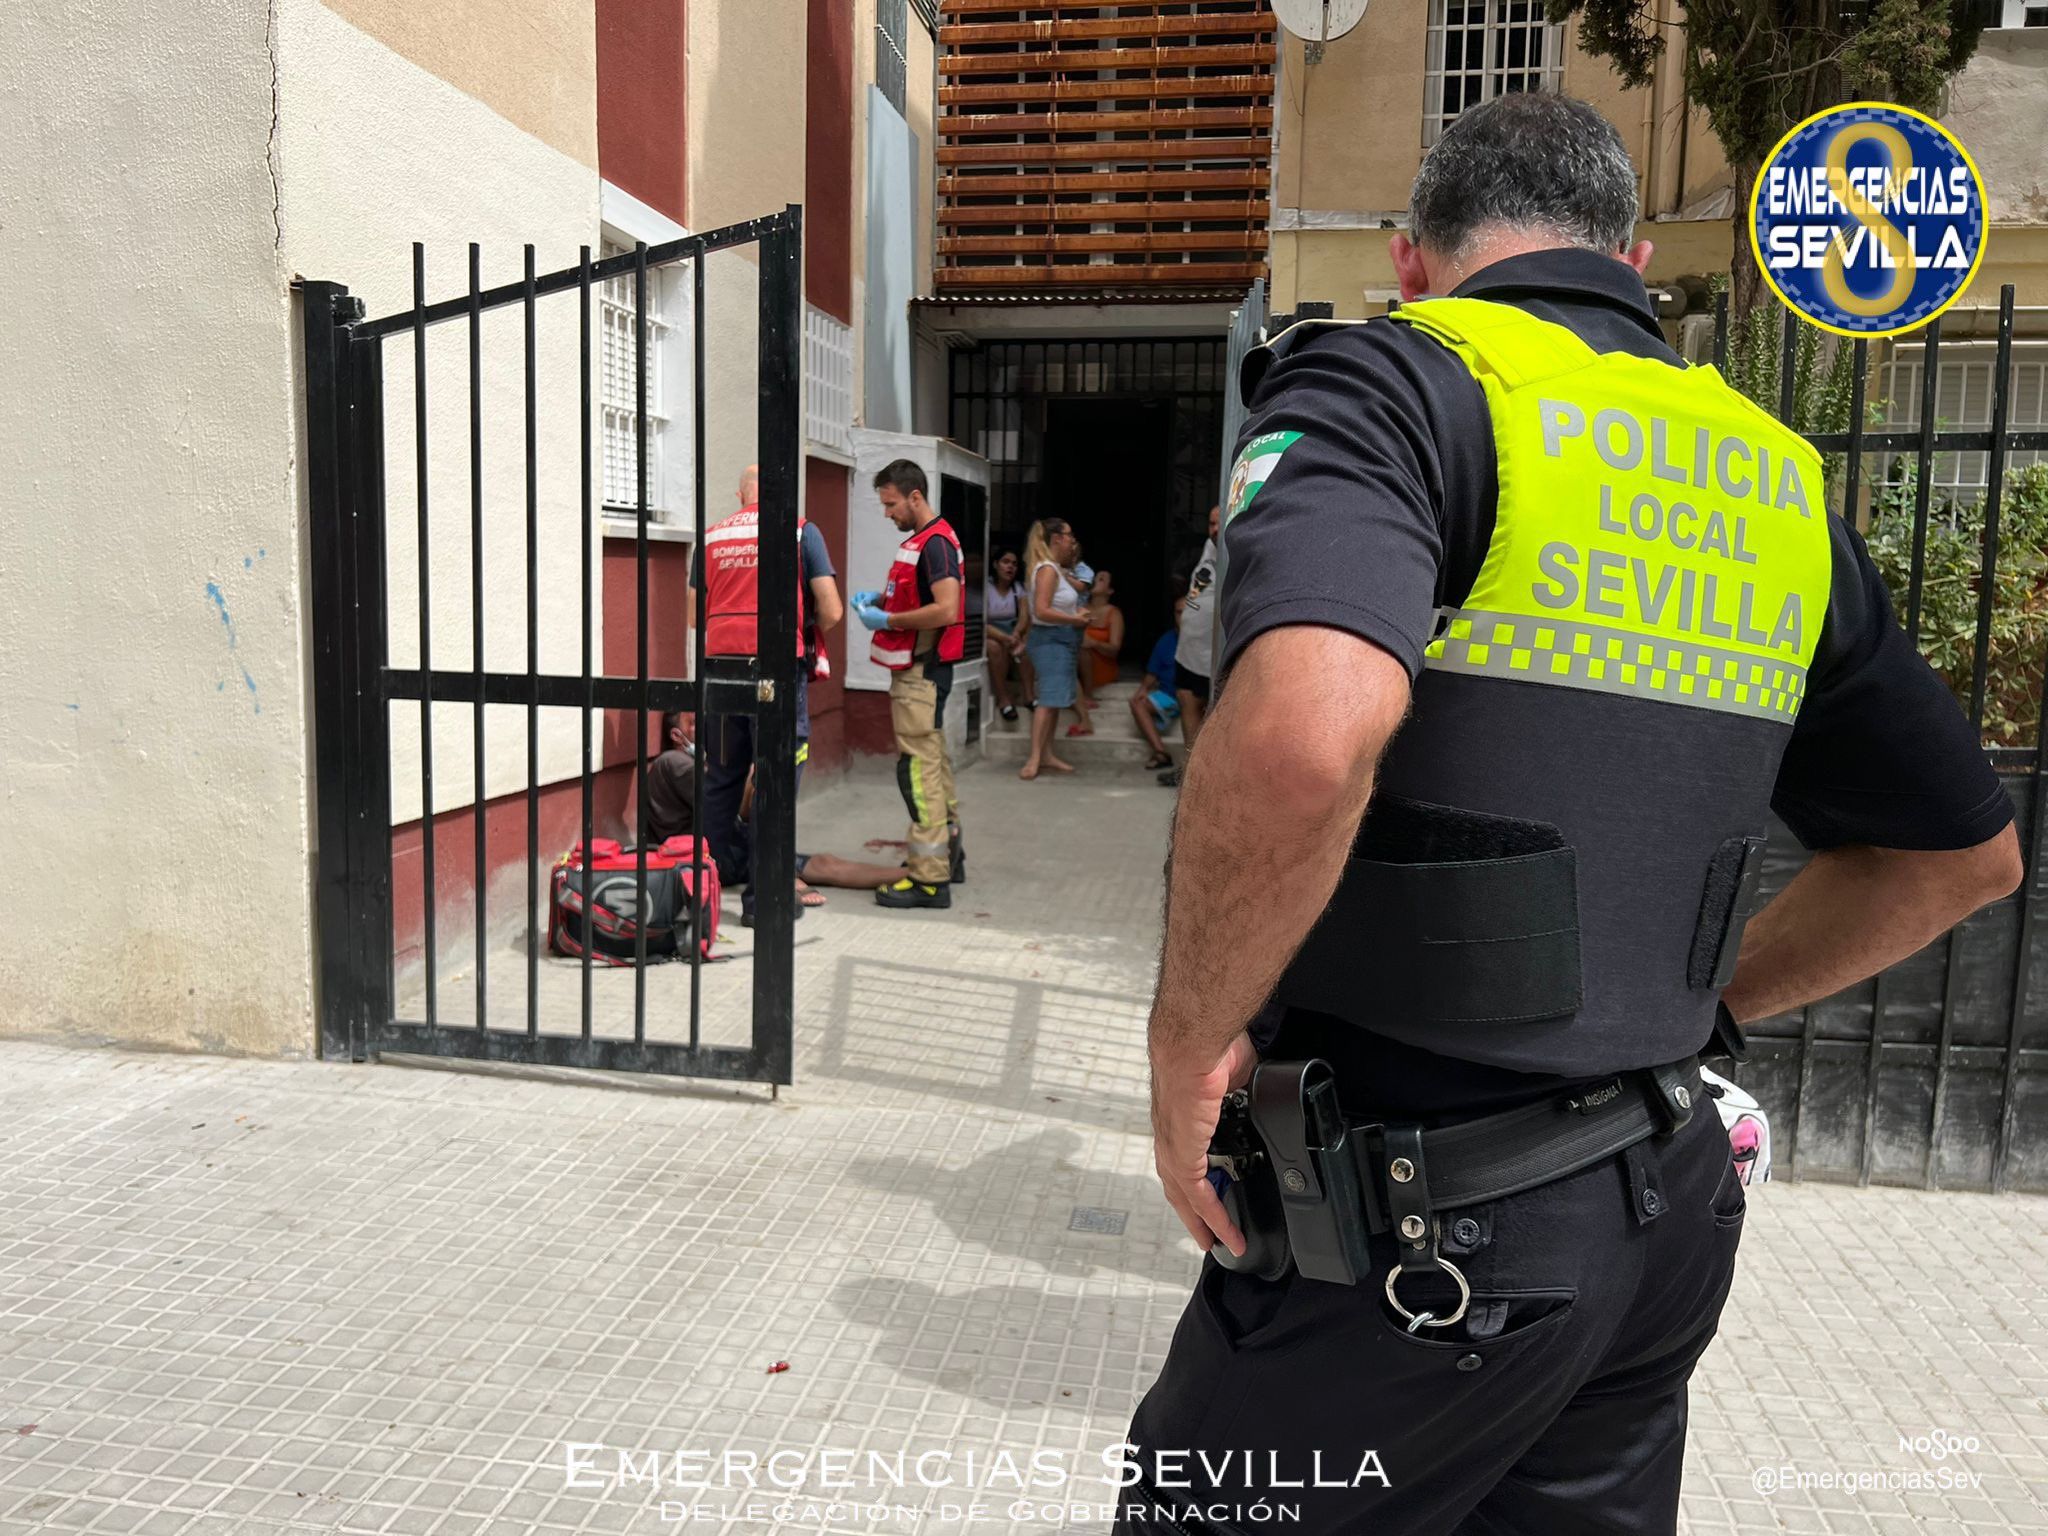 El herido, sentado en el suelo, tras sufrir un golpe en la cabeza en Sevilla mientras iba caminando.